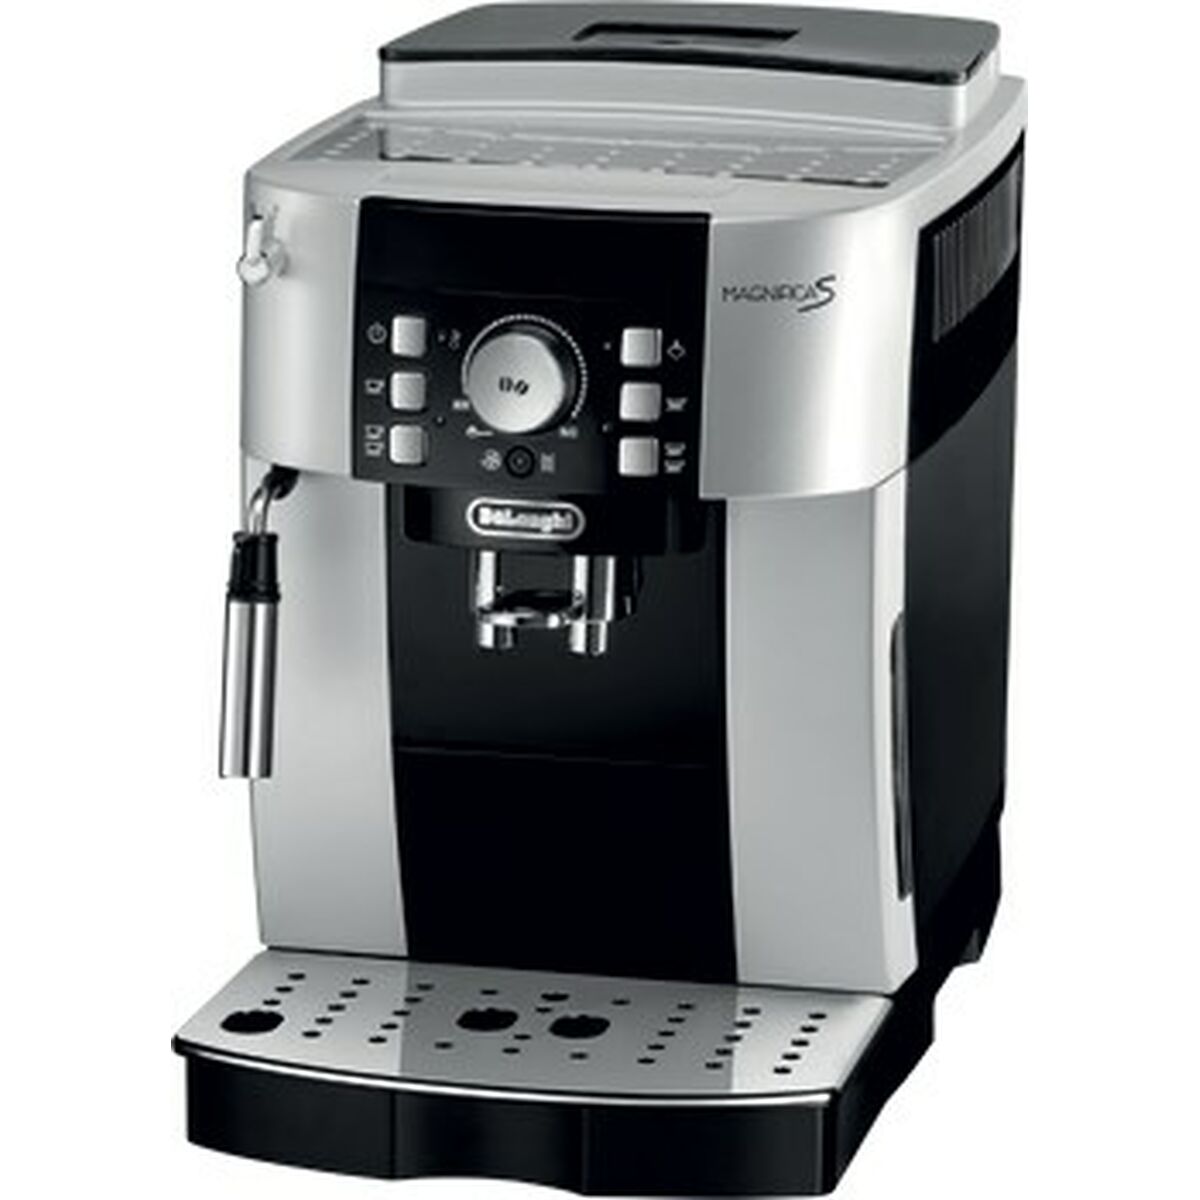 Superautomatische Kaffeemaschine DeLonghi S ECAM 21.117.SB Schwarz Silberfarben 1450 W 15 bar 1,8 L - CA International 